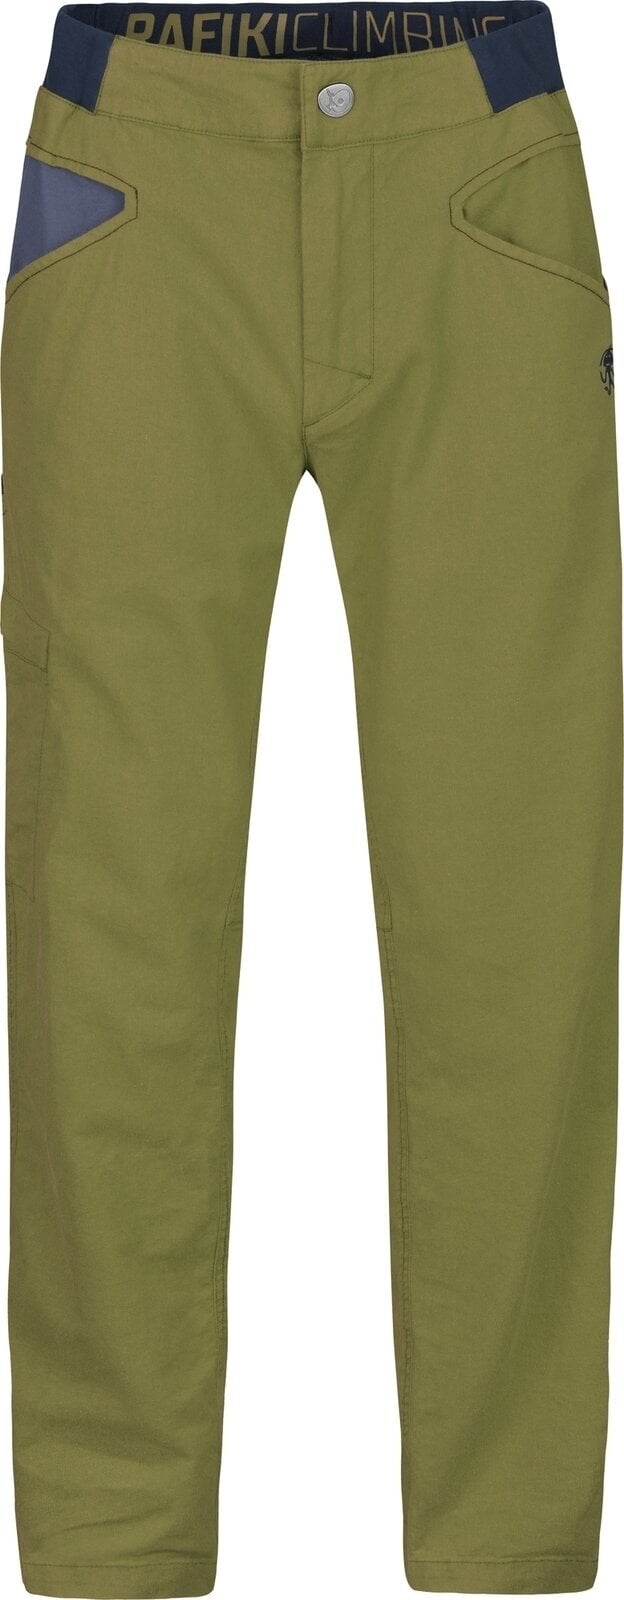 Pantalones para exteriores Rafiki Grip Man Pants Avocado M Pantalones para exteriores